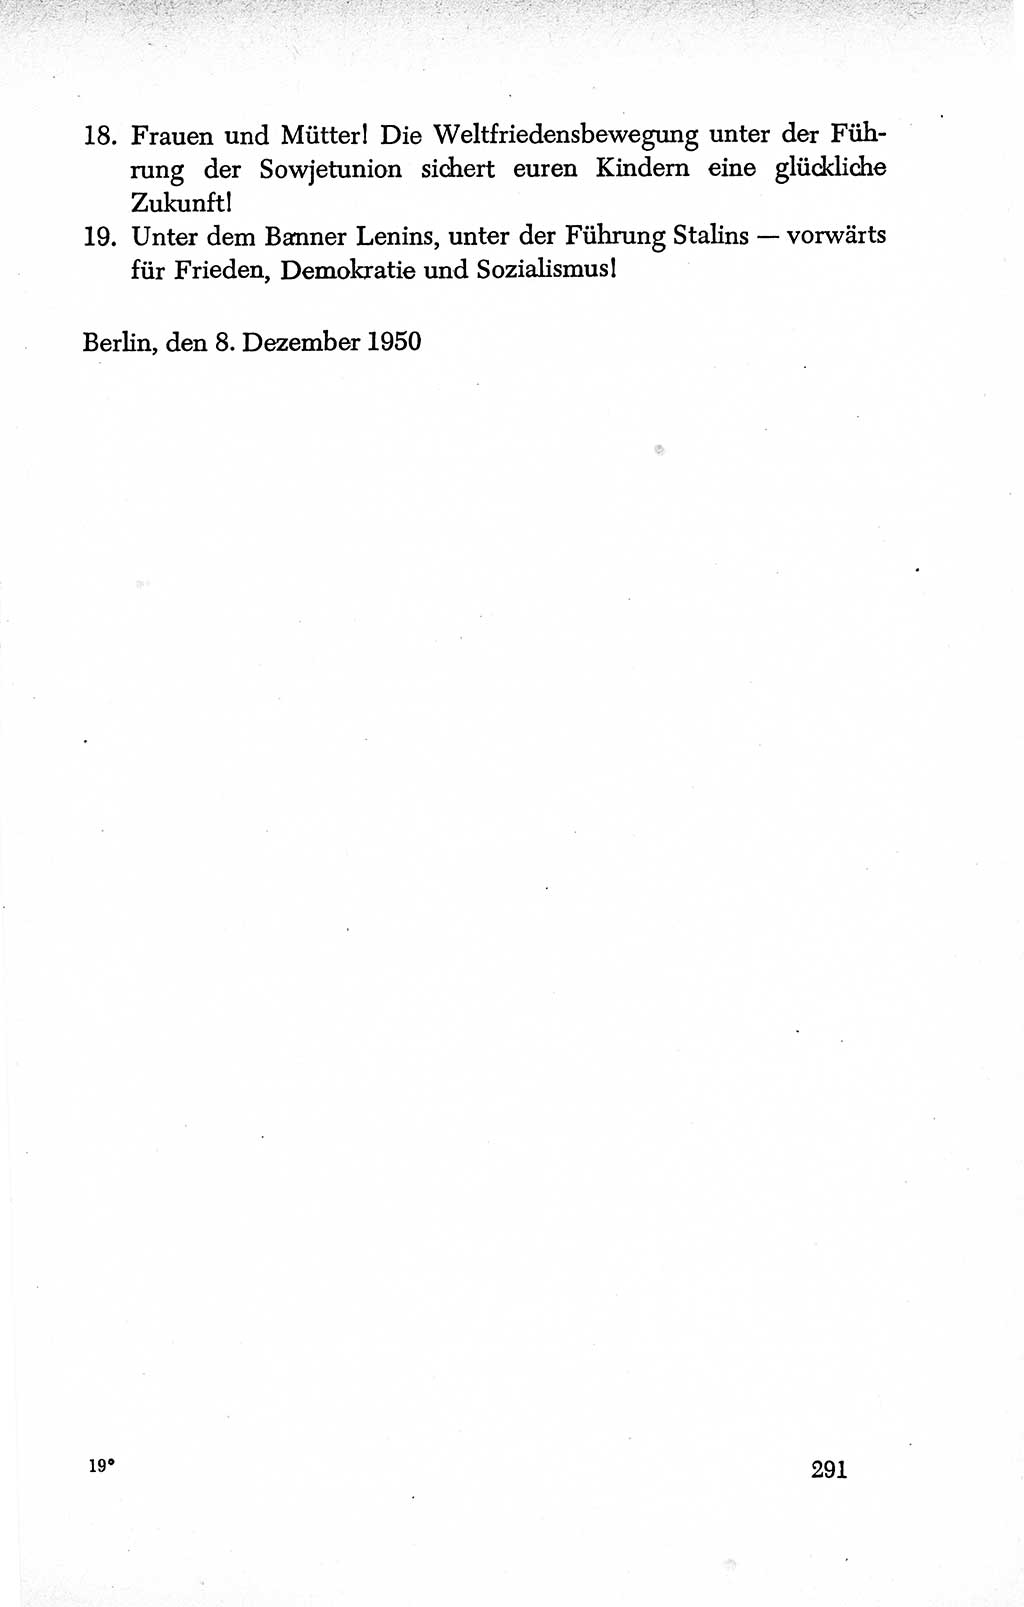 Dokumente der Sozialistischen Einheitspartei Deutschlands (SED) [Deutsche Demokratische Republik (DDR)] 1950-1952, Seite 291 (Dok. SED DDR 1950-1952, S. 291)